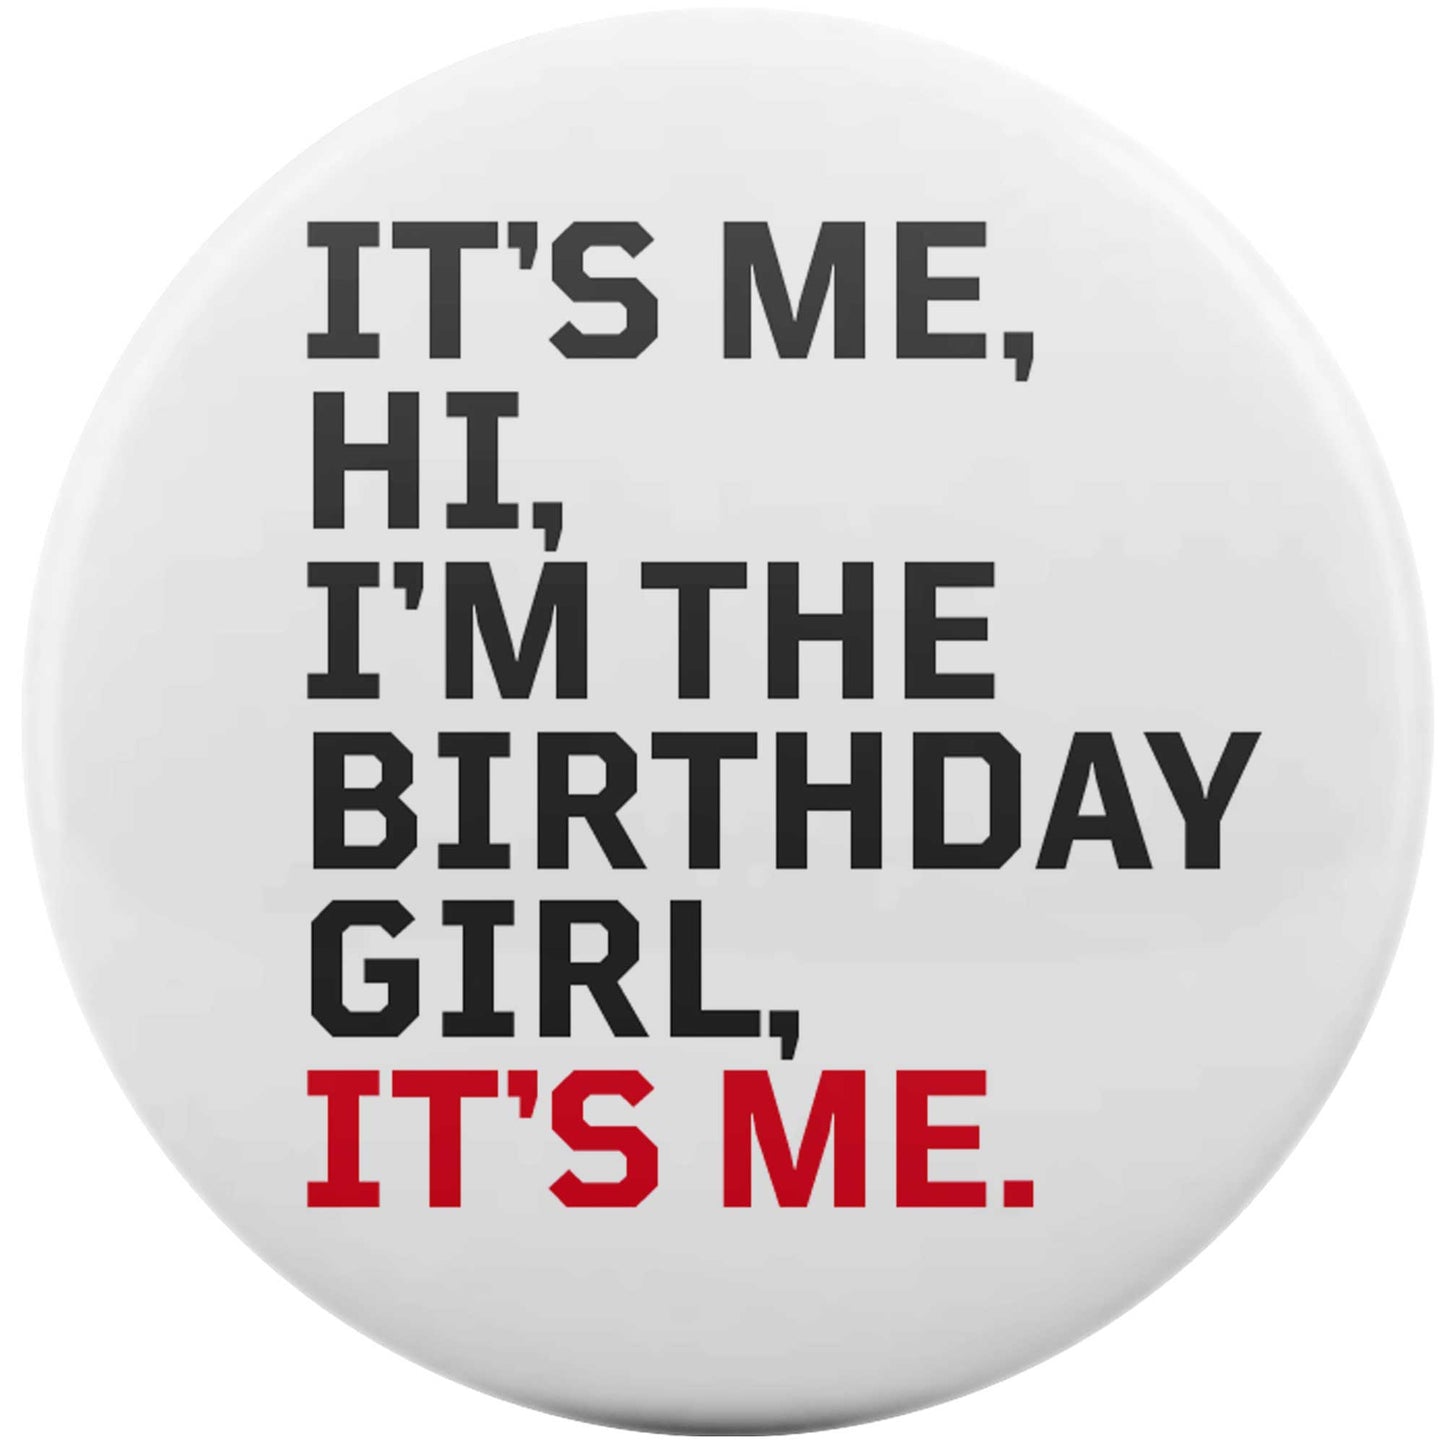 It's Me, Hi, I'm The Birthday Girl, It's Me.